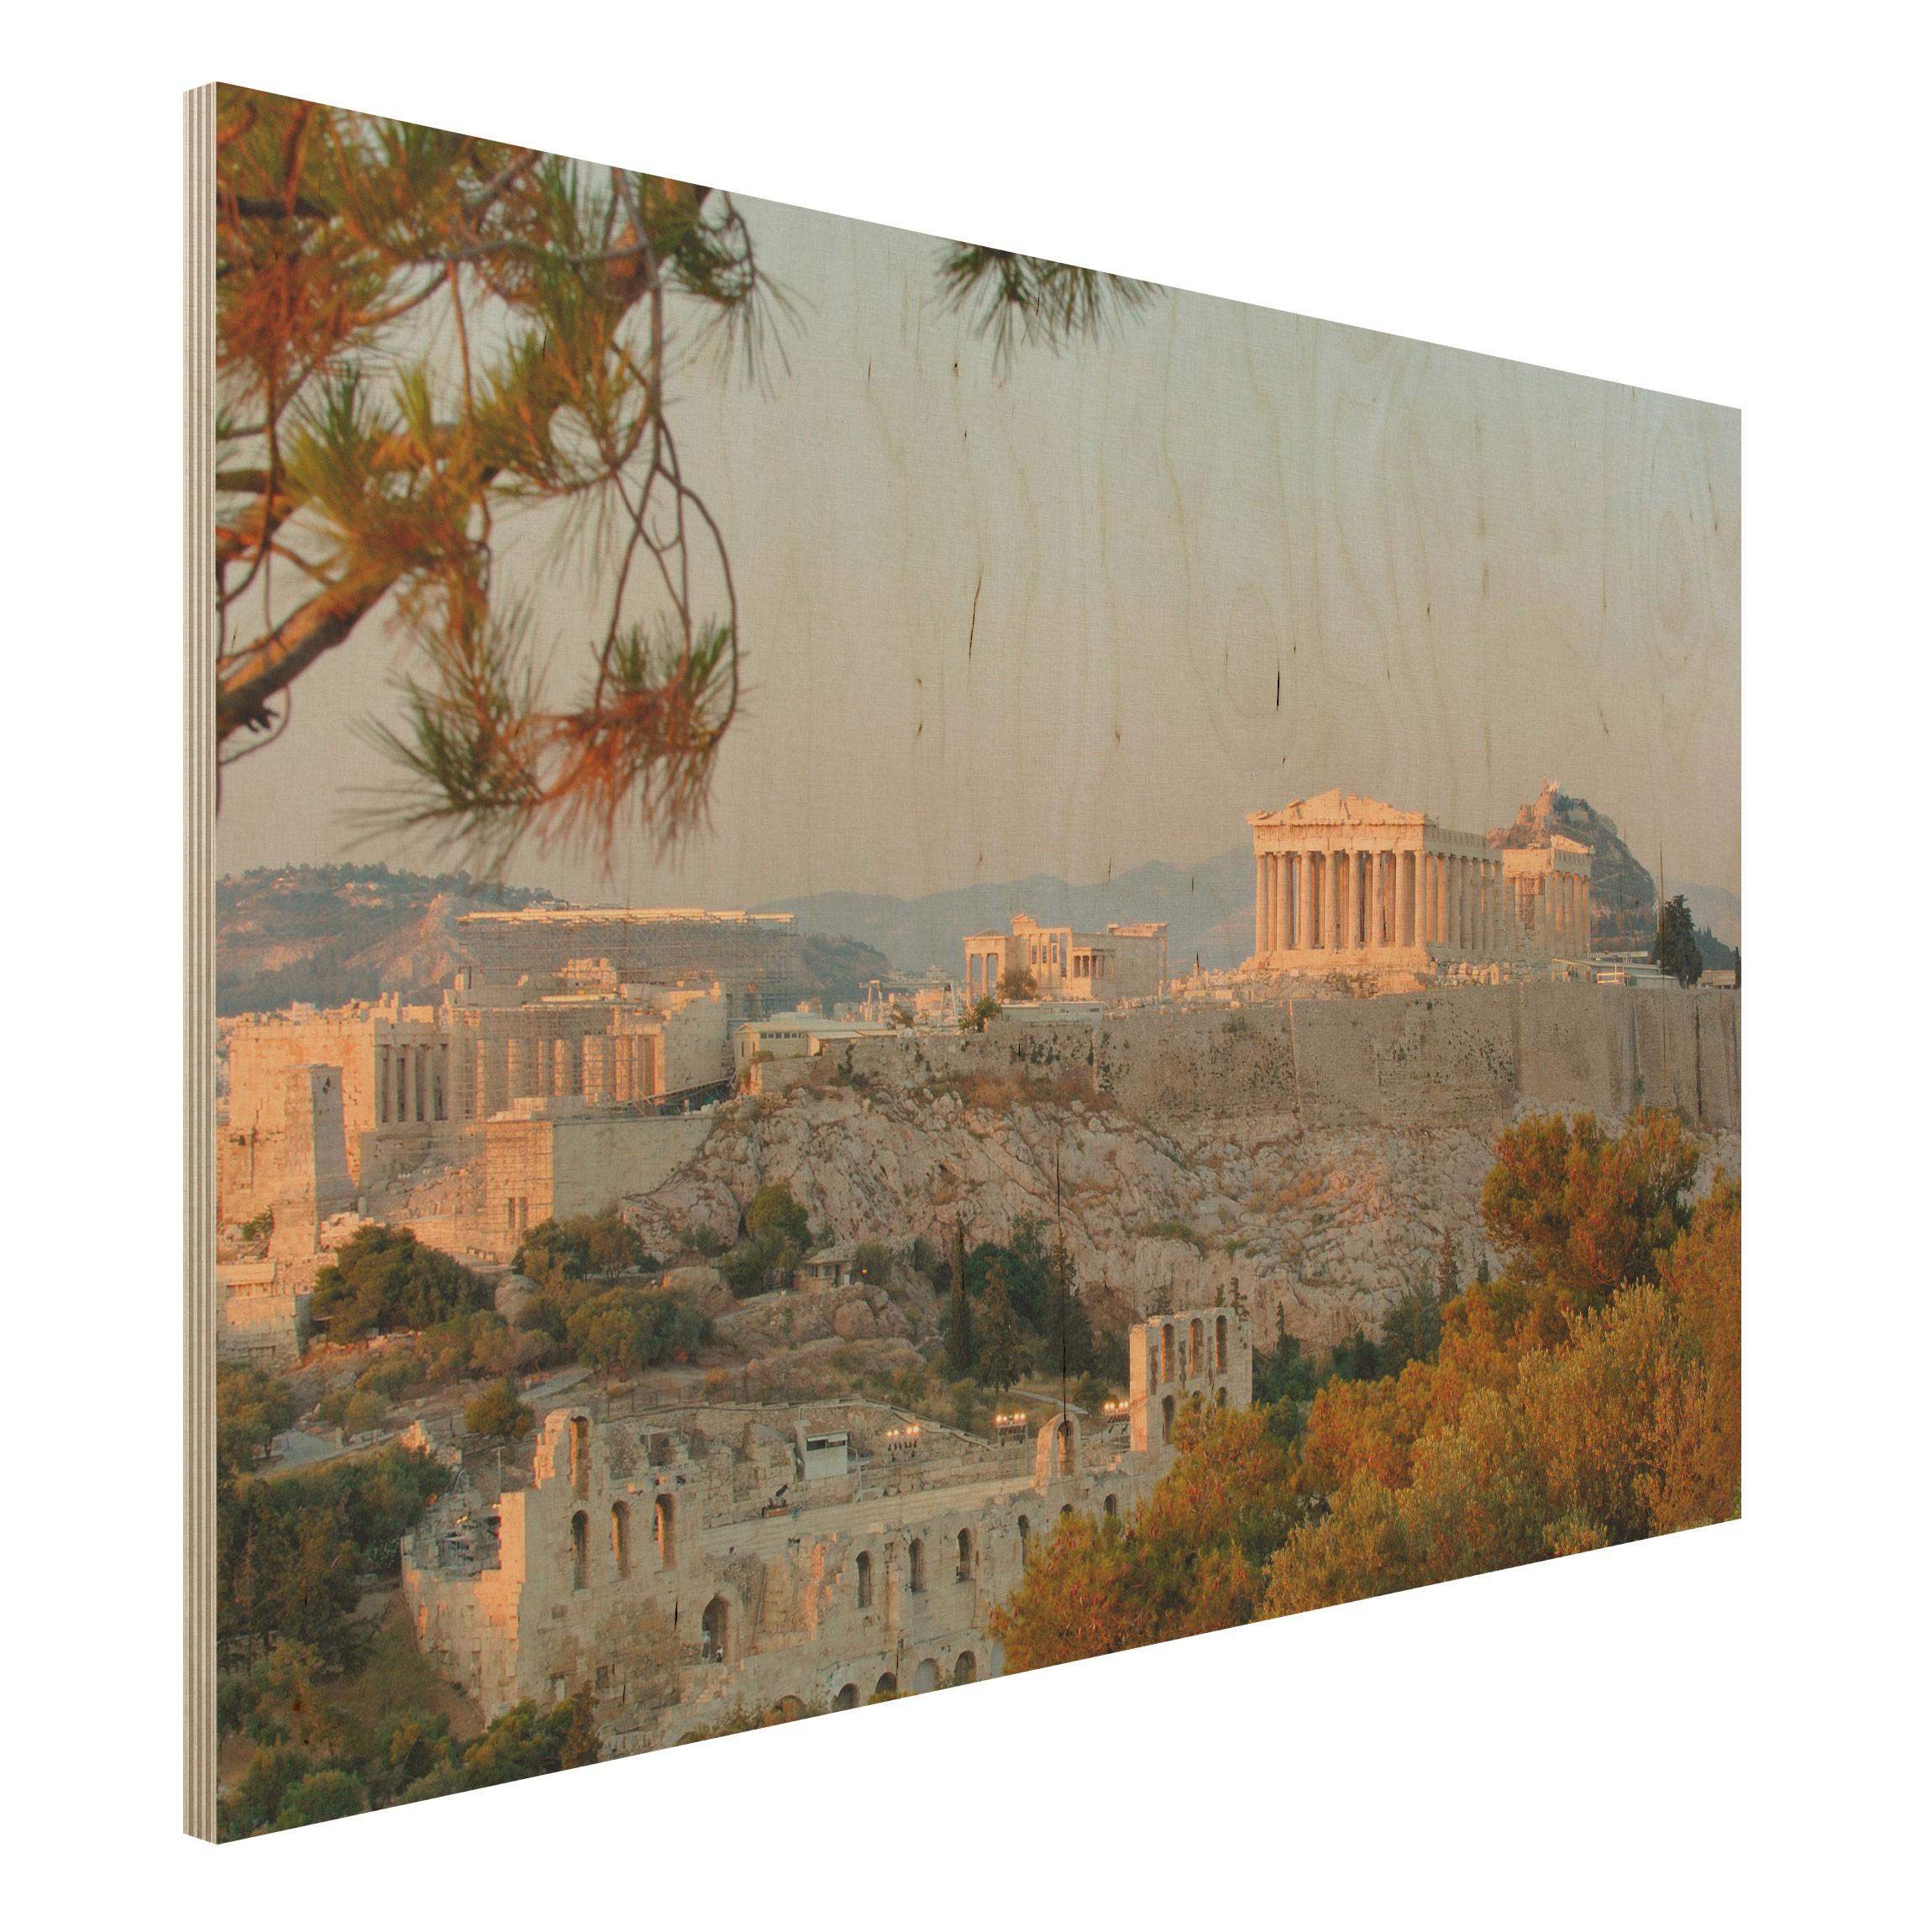 Drevenné obrazy Akropolis 2:3